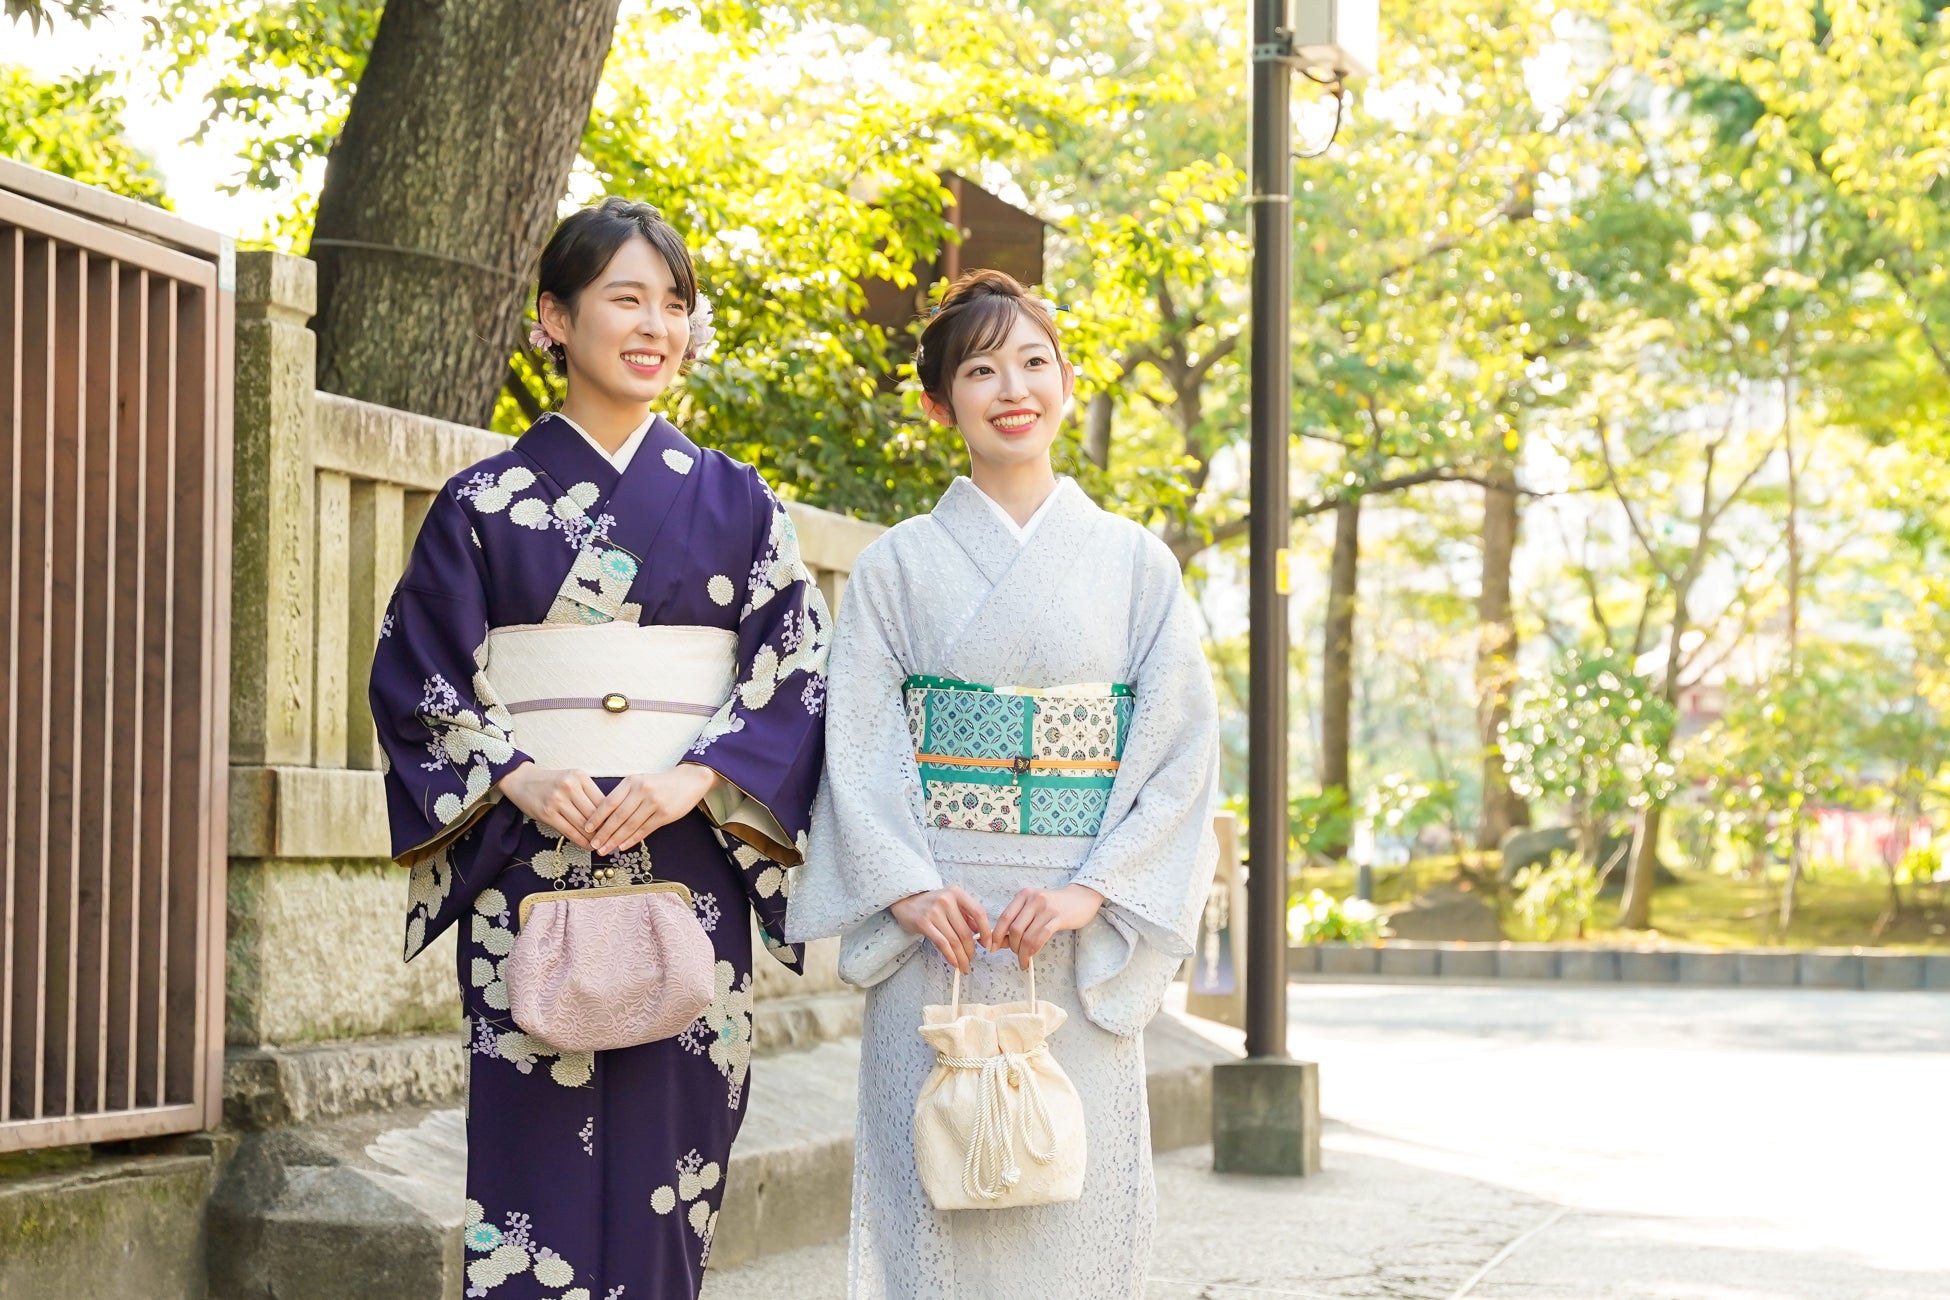 着物を着て楽しむ方が街中に溢れ、日本の美しい着物文化を未来へと継承していきたい。女性の美しさを披露するイベント「白桜祭」観覧に無料でご招待します！のサブ画像2